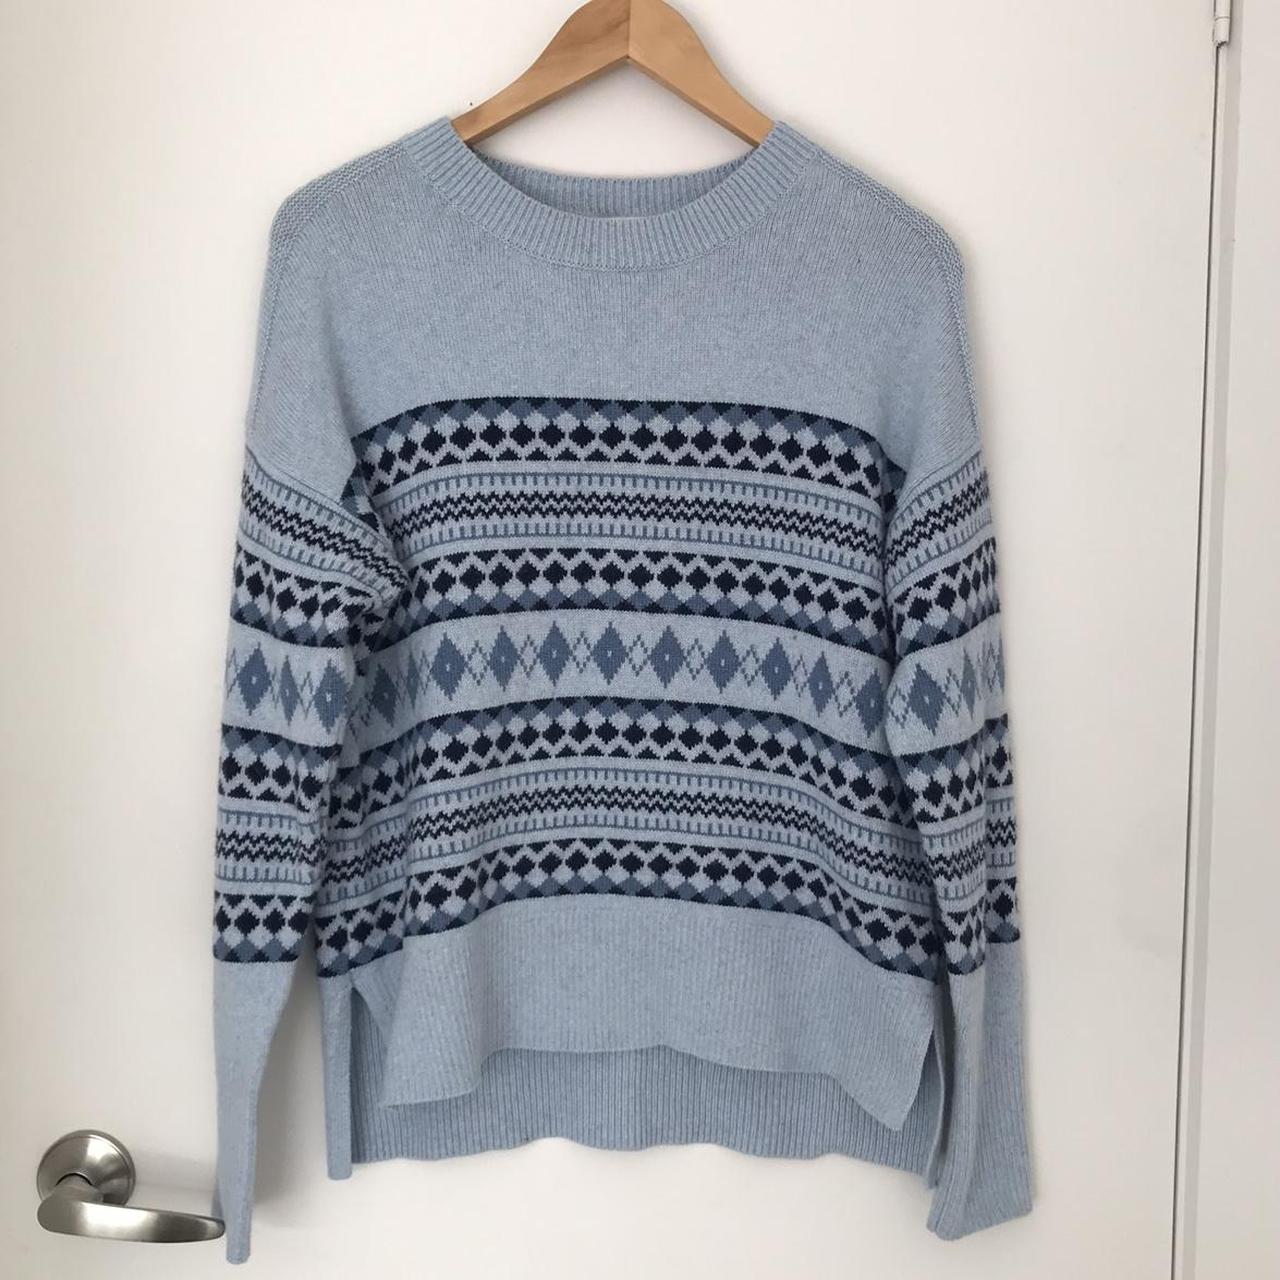 Witchery scandi knit jumper Size M Like new - never... - Depop